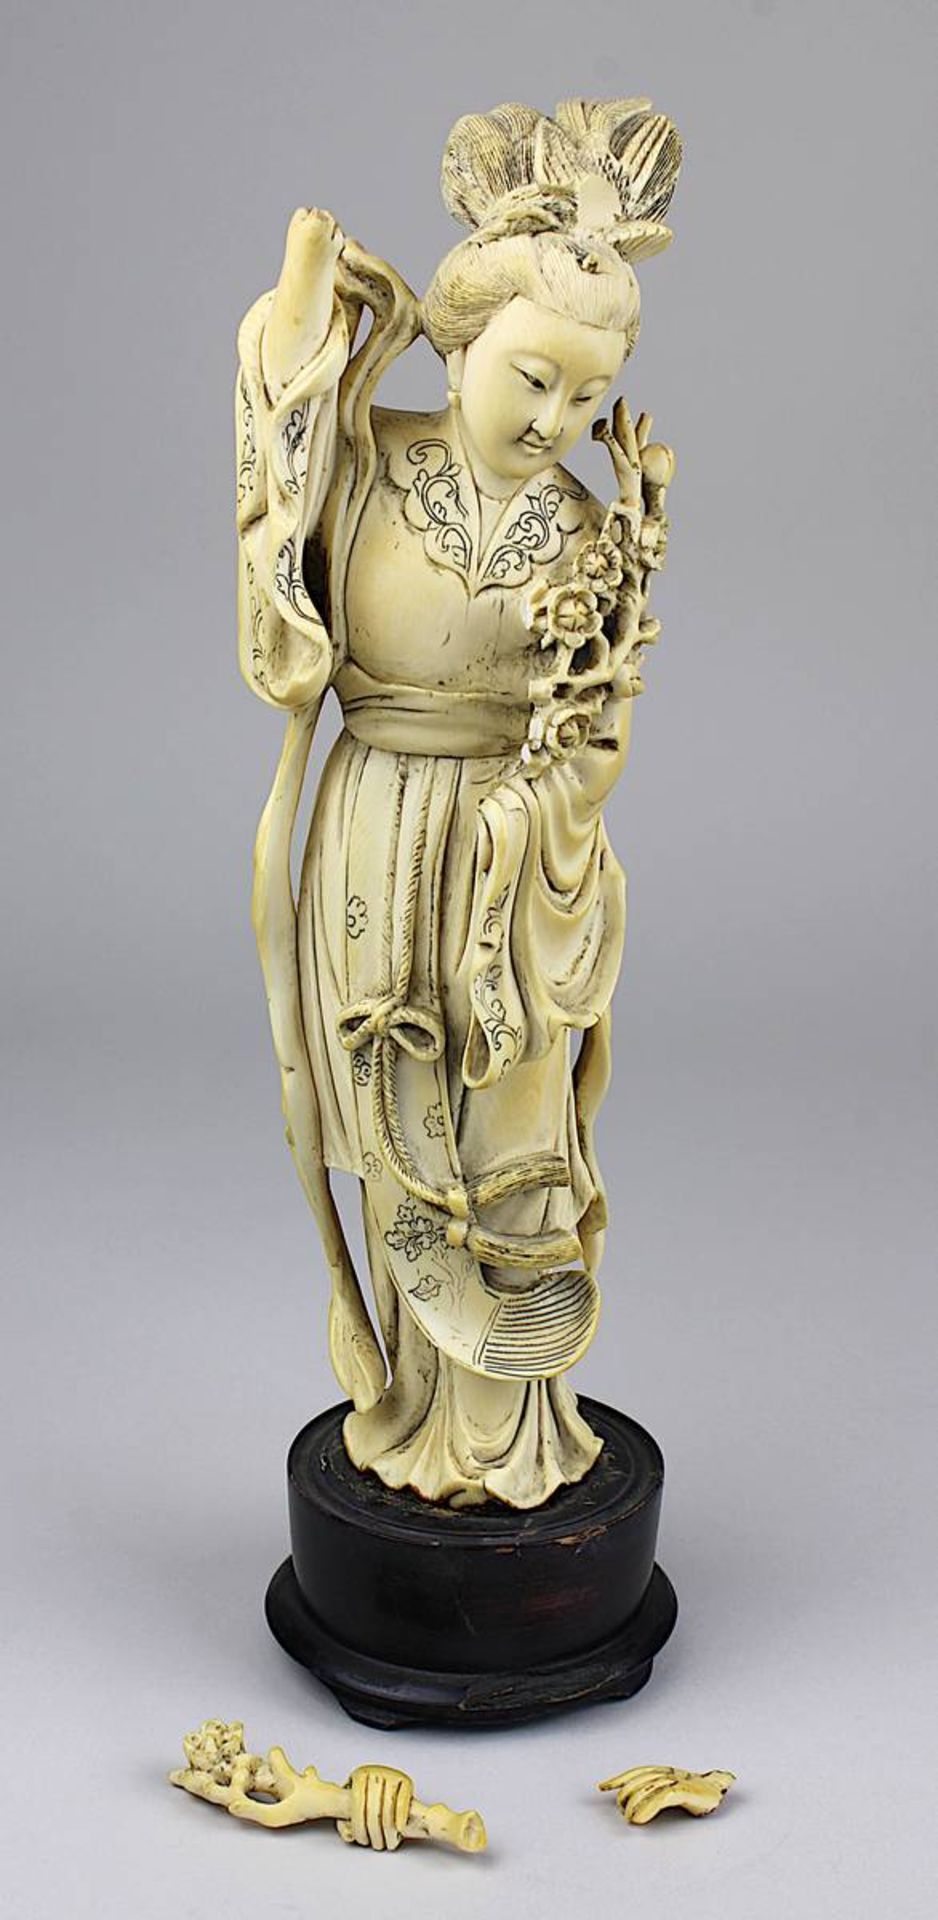 Geisha-Figur, Elfenbein, Japan um 1900, fein geschnitzte Figur, beide Hände abgebrochen, mehrere